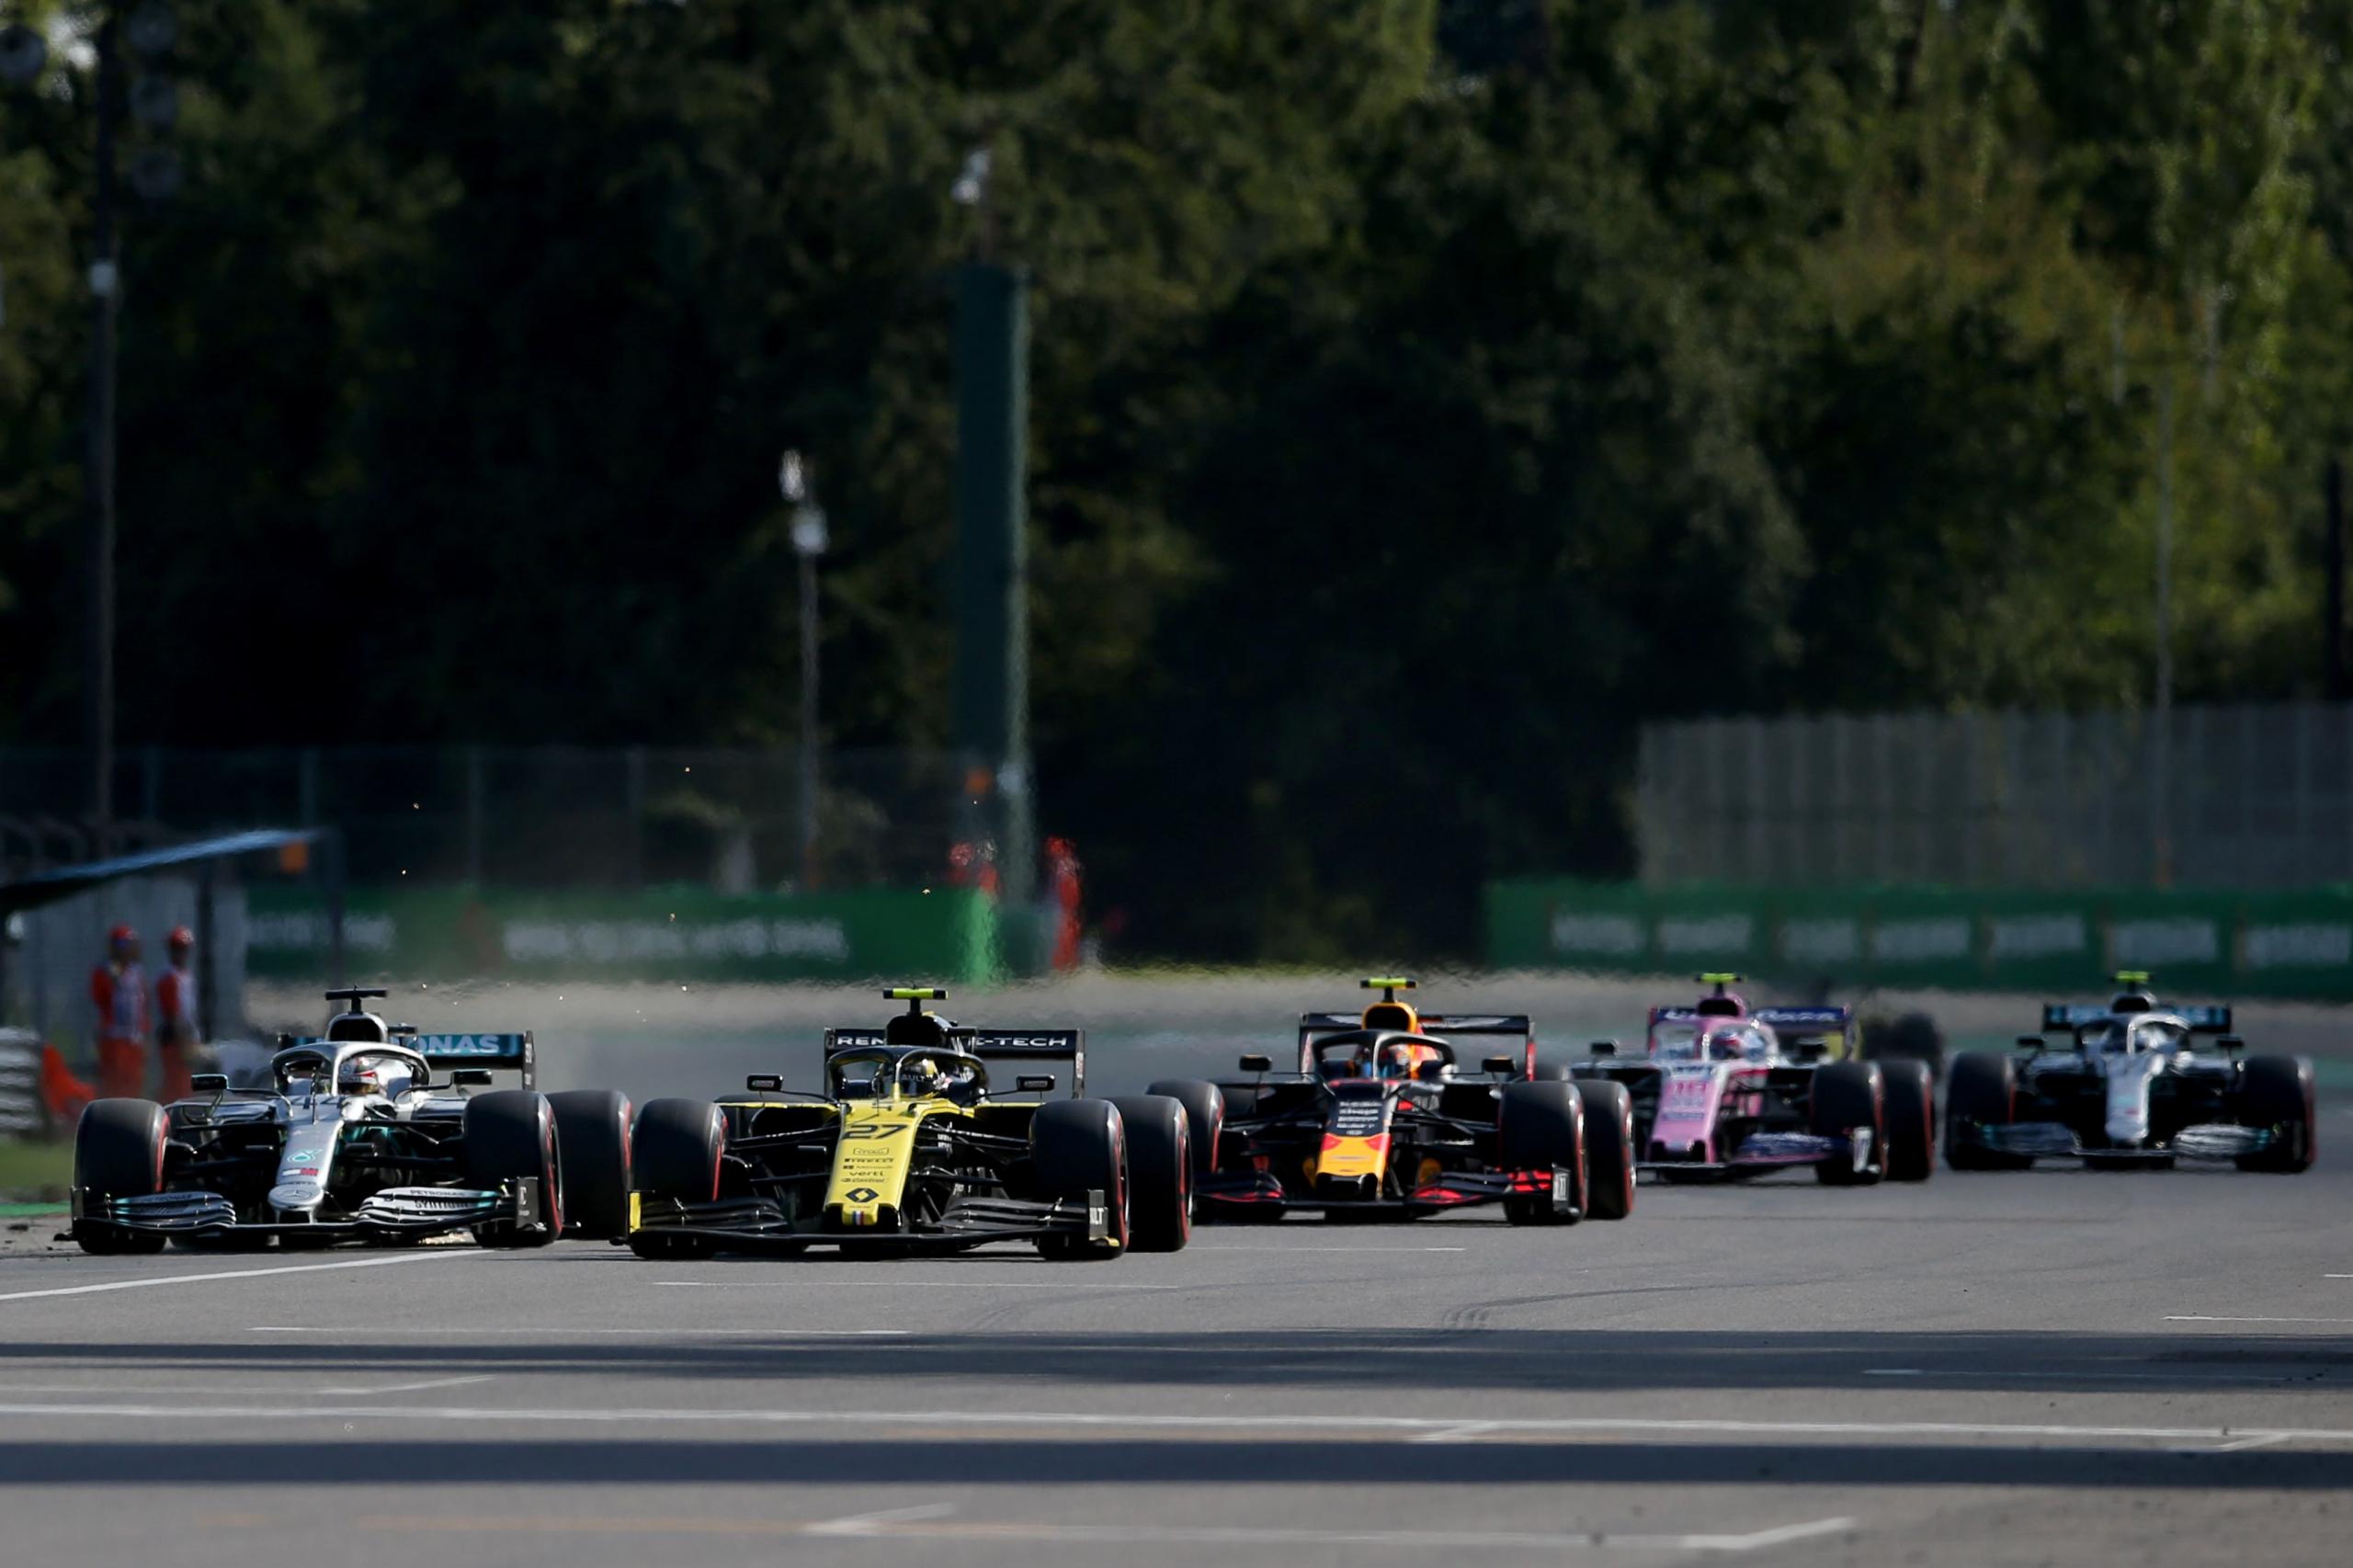 Cinq fois où la F1 a été scandaleuse - Crédit photo : Charles Coates / Getty Images